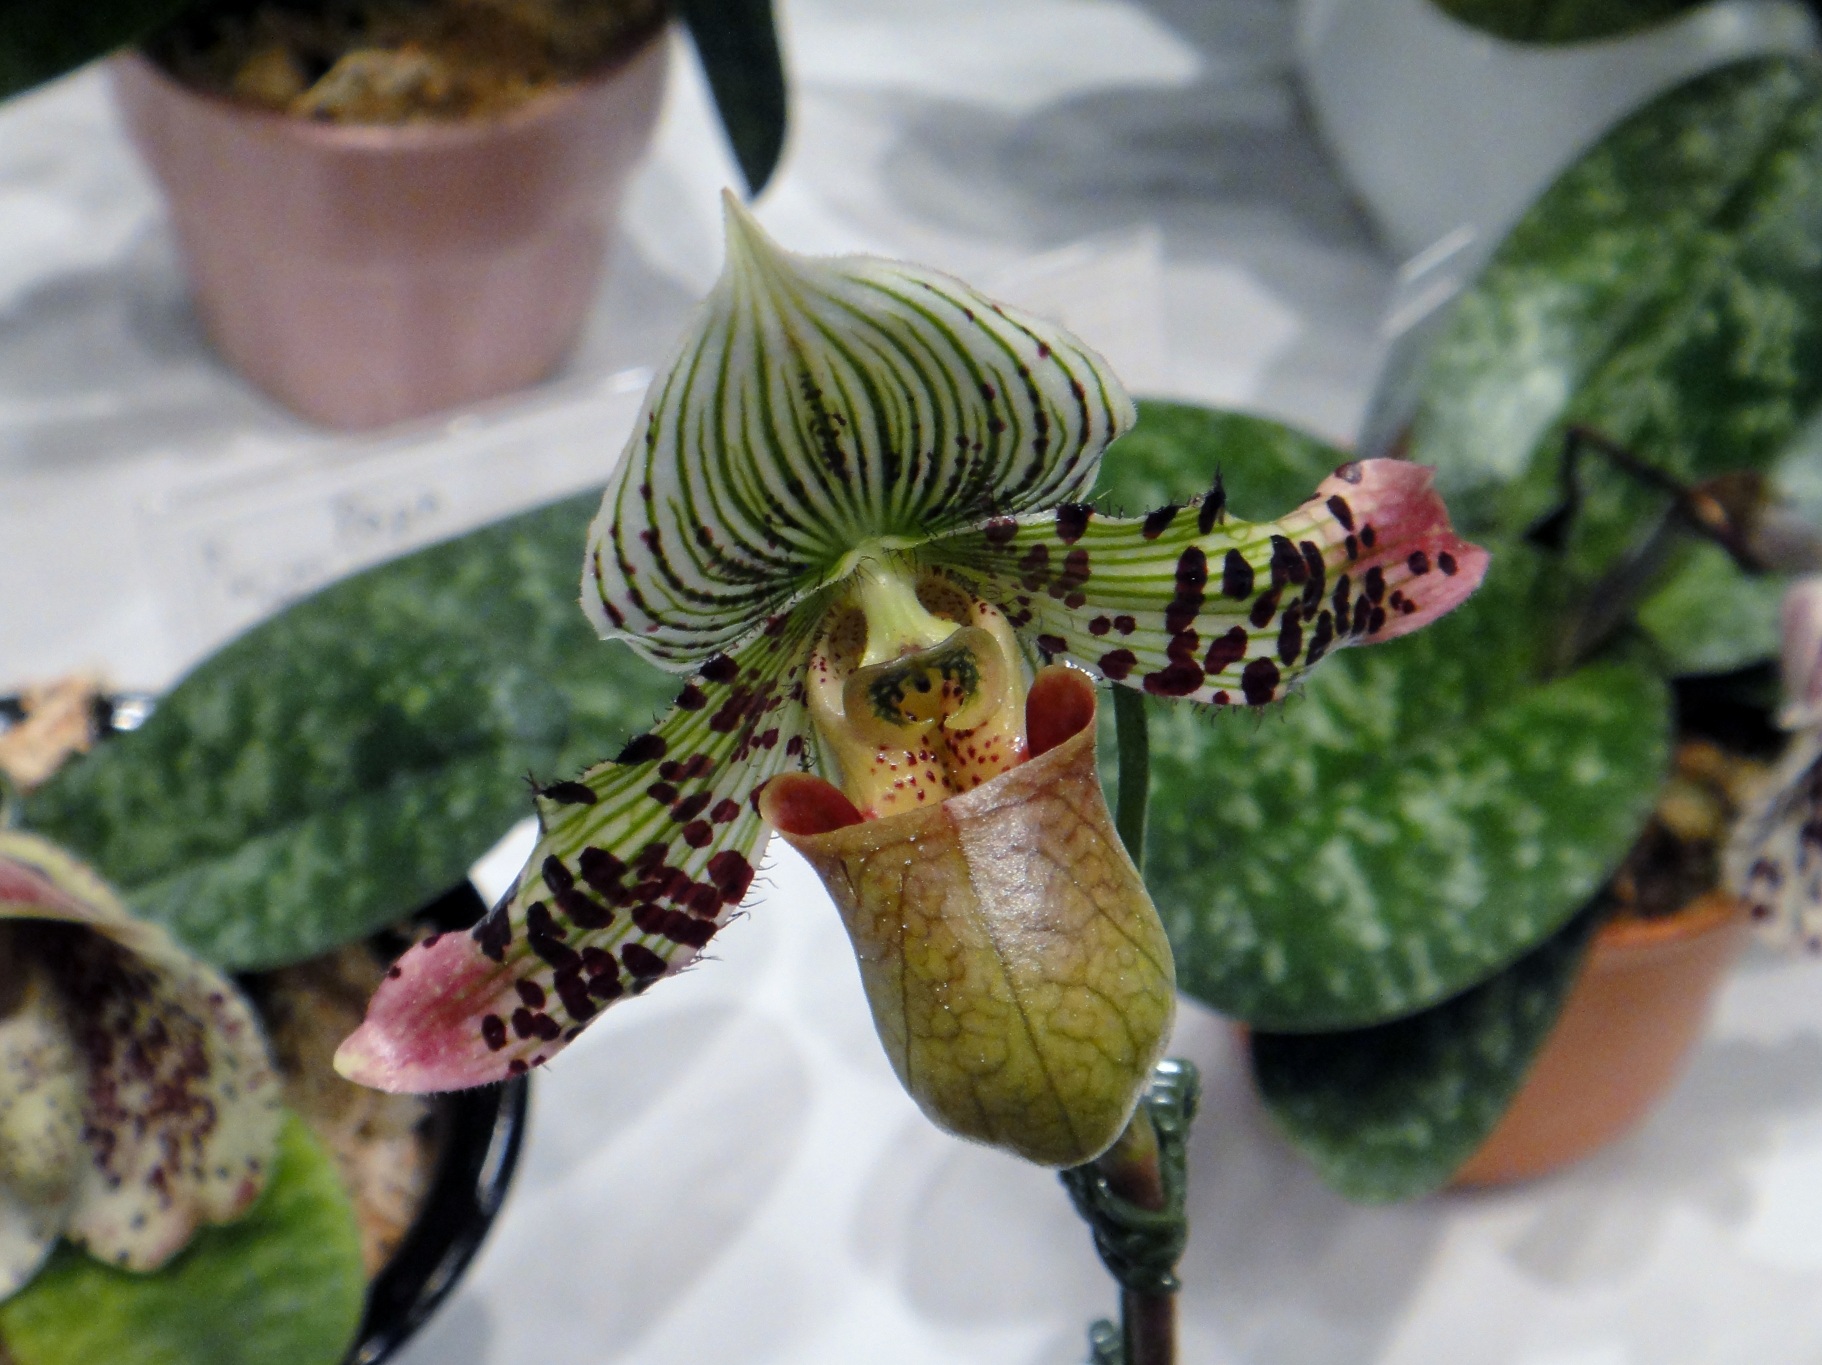 http://orchids.la.coocan.jp/Paphiopedilum/Paphiopedilum%20argus/DSC00402.JPG